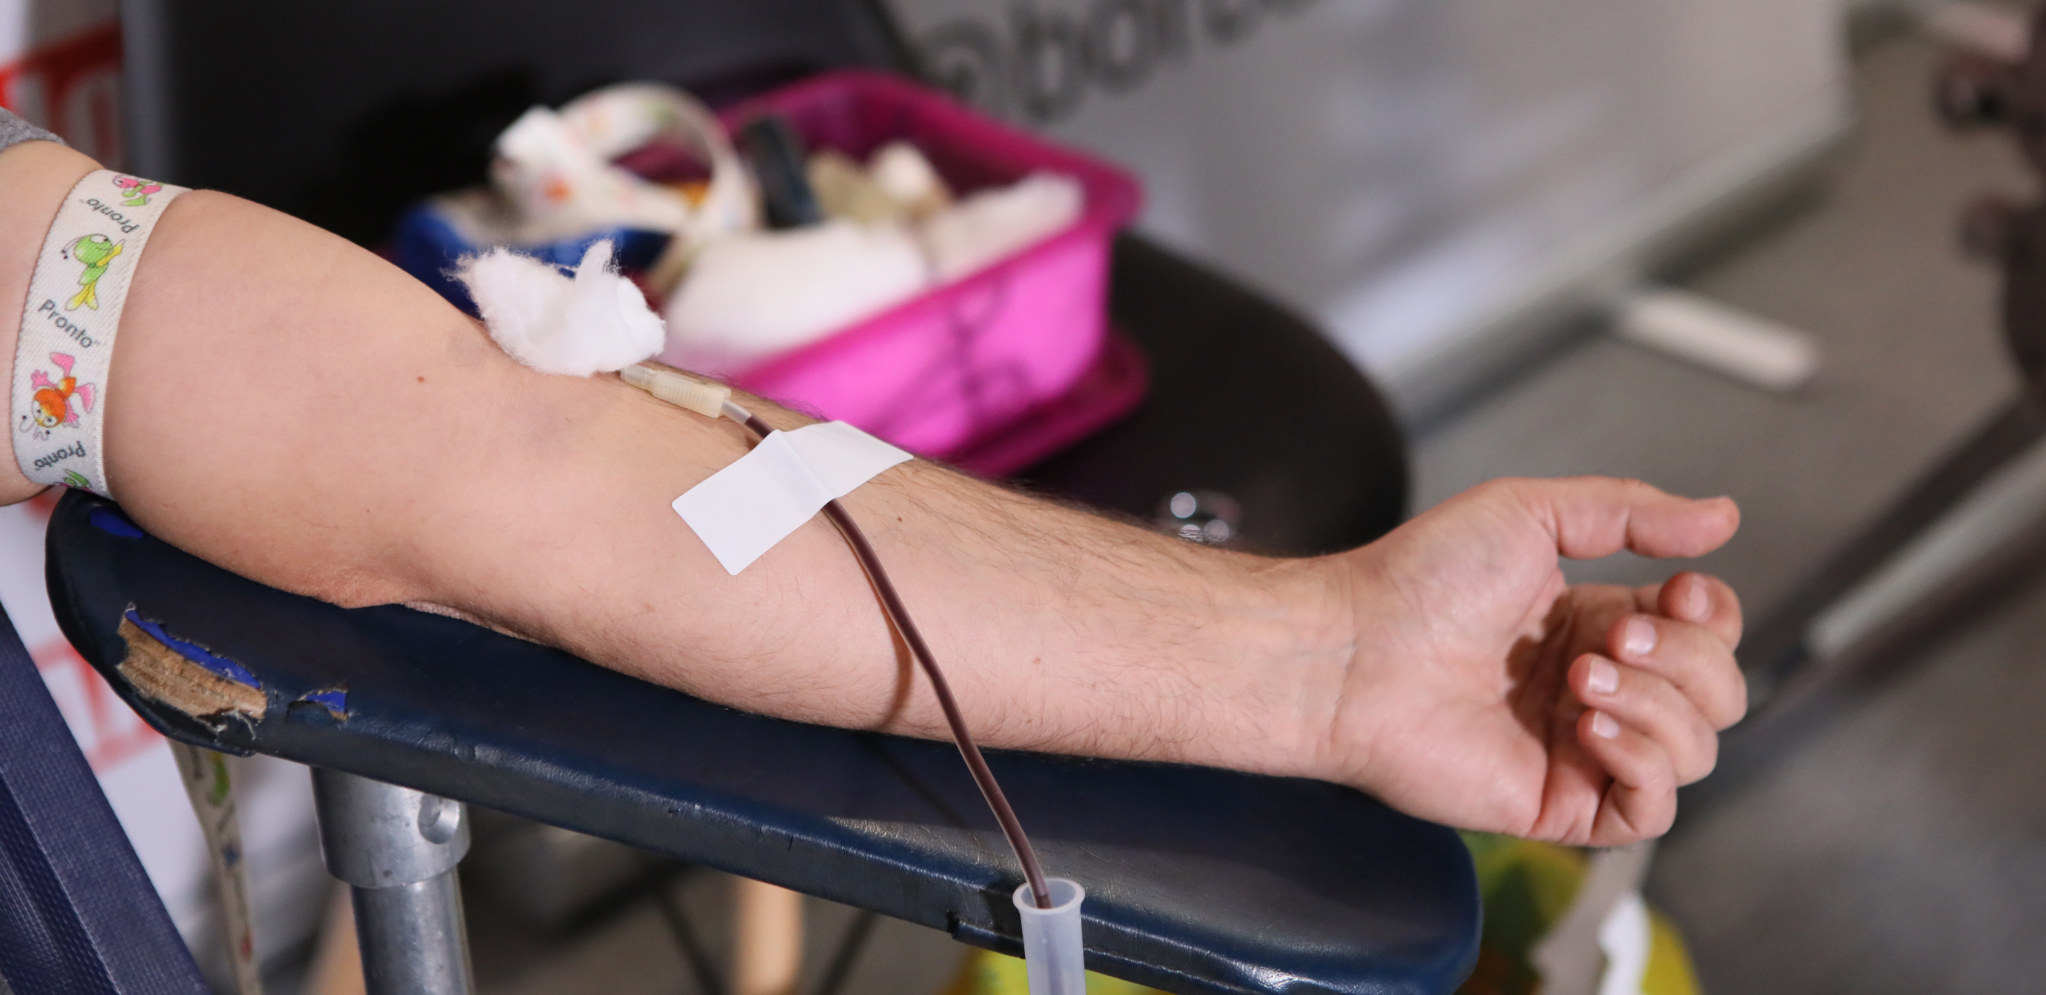 POMOĆ ZA POVREĐENE U RUDNIKU SOKO Akcija dobrovoljnog davanja krvi u Domu kulture Aleksinac od 12 do 17 časova